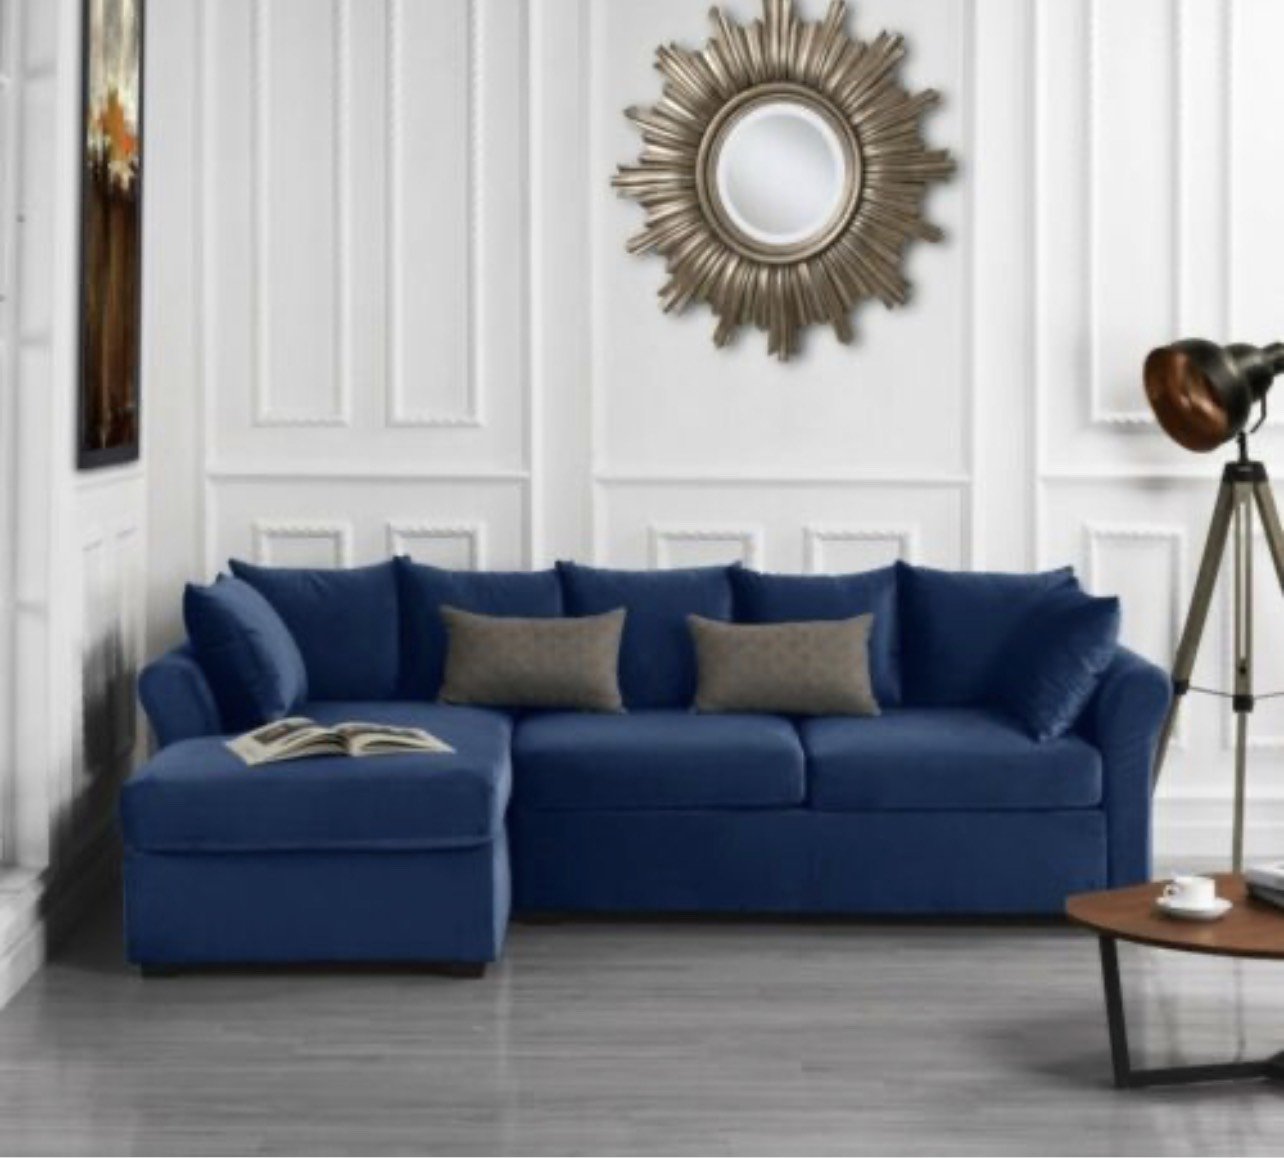 Sofa xuất khẩu Tundo phòng khách 240x140 cm màu xanh dương